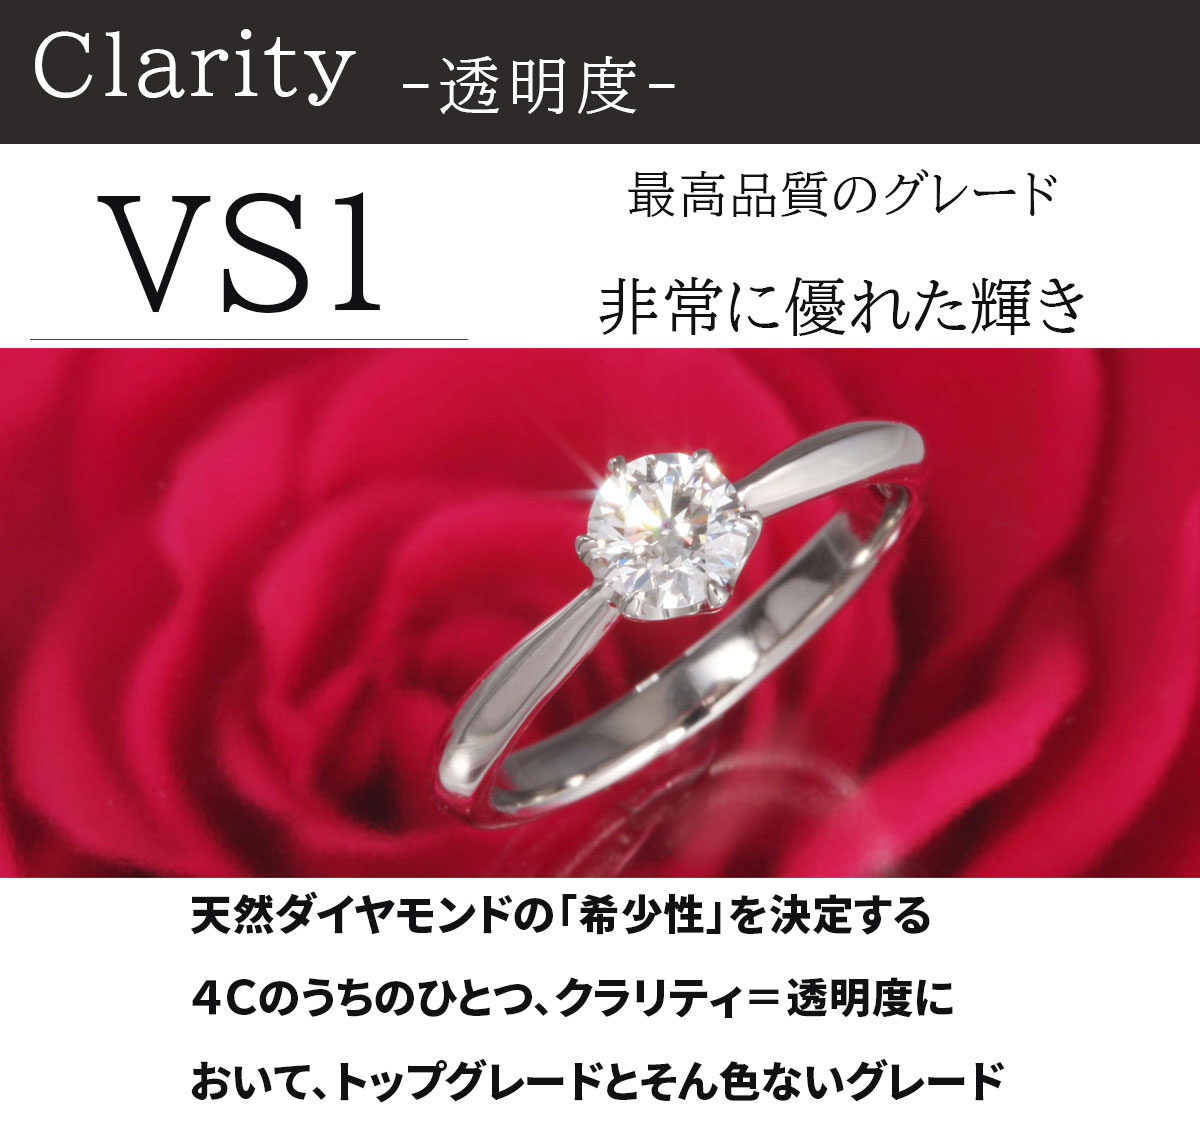 婚約指輪 ティファニー6本爪タイプ 婚約指輪 EX ダイヤ サイズ直し1回